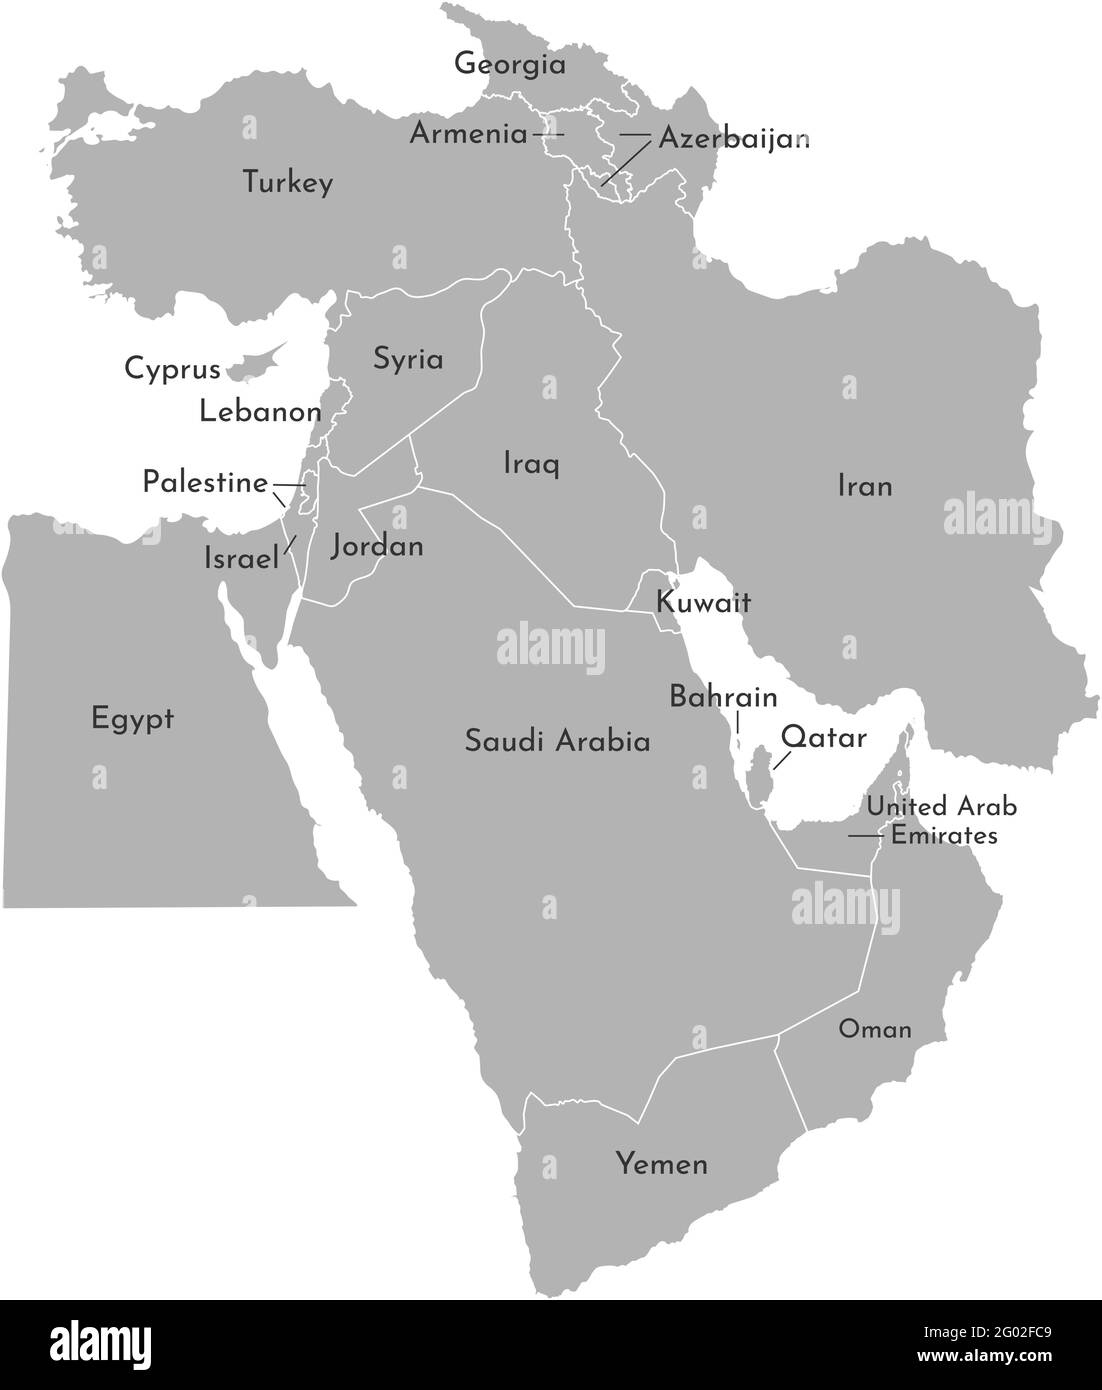 Mappa di illustrazione vettoriale dei paesi asiatici. Medio Oriente. Stati confinanti con la Turchia, Cipro, la Giordania, gli Emirati Arabi Uniti, l'Arabia Saudita, Qatar, Iraq, IR Illustrazione Vettoriale